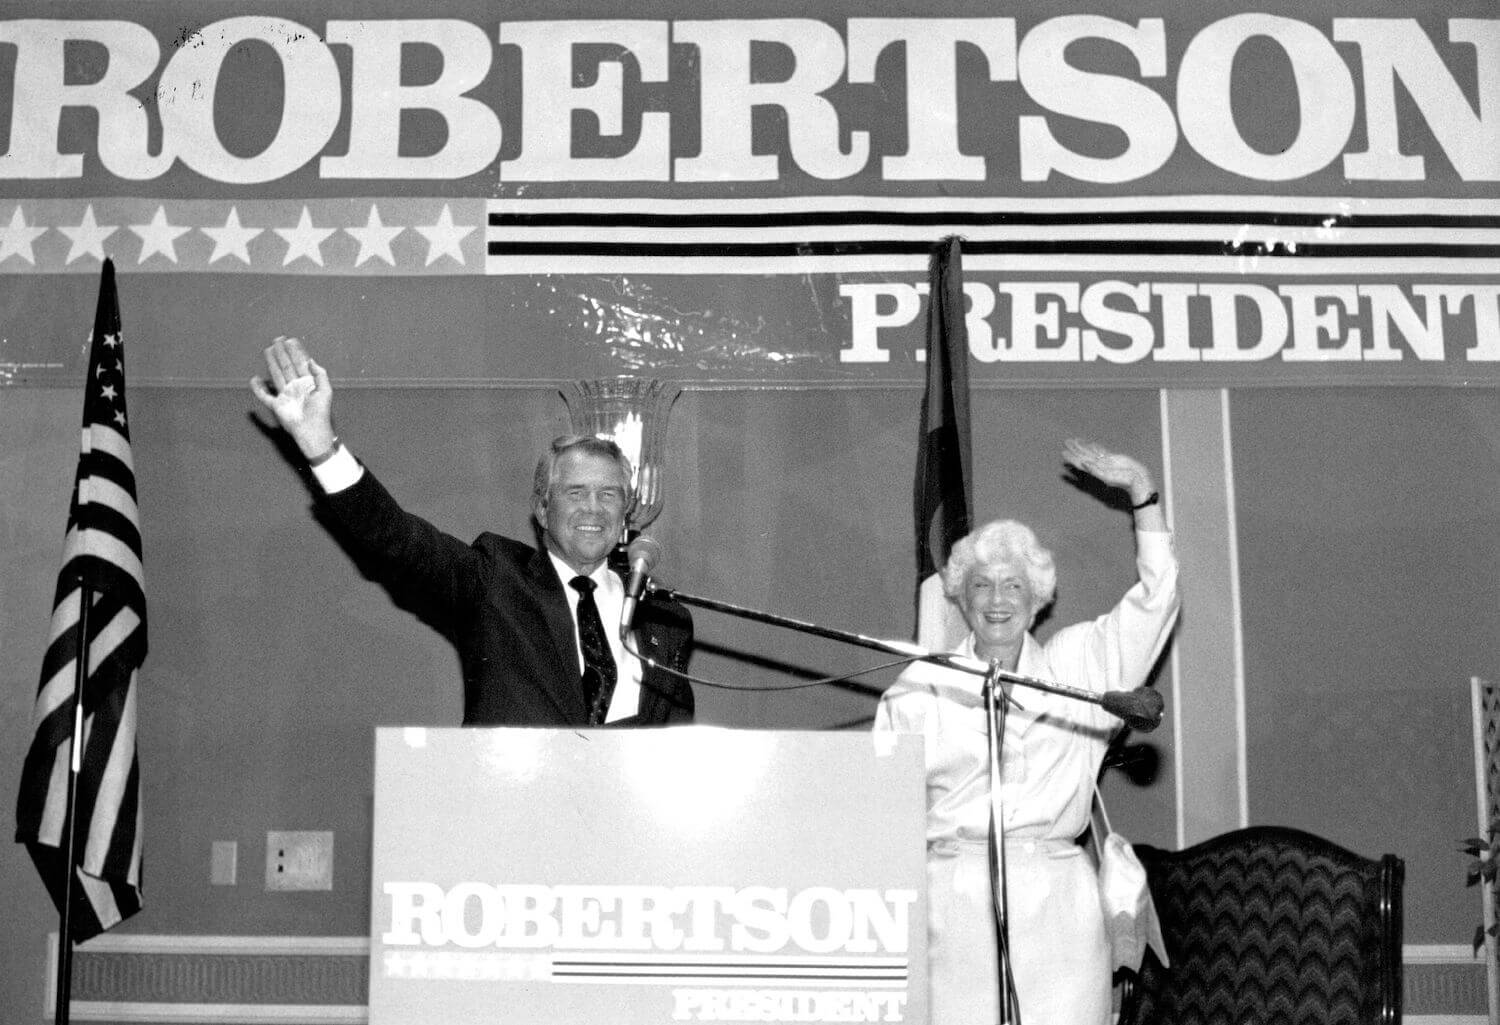 Siapakah Istri Pat Robertson, Dede Robertson? Berapa Banyak Anak yang Mereka Miliki?